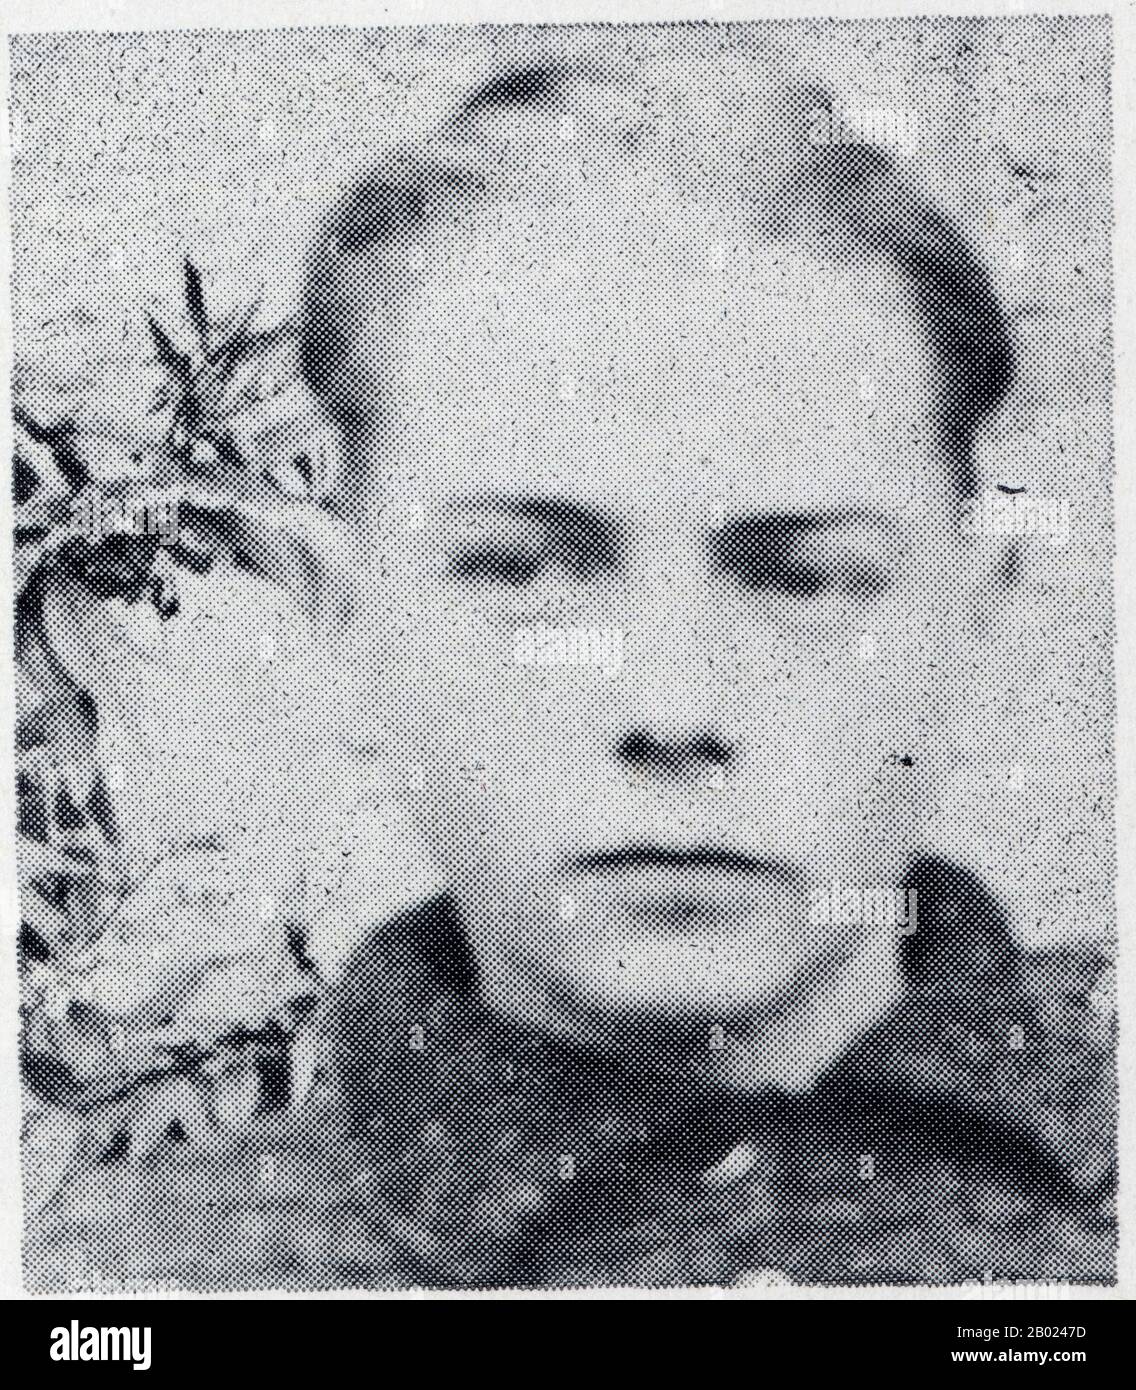 Gaston Retrouvey. Cultivateur à Boussières, arrêté le 2 Juillet 1943 et fusillé le 26 Septembre 1943 Stockfoto